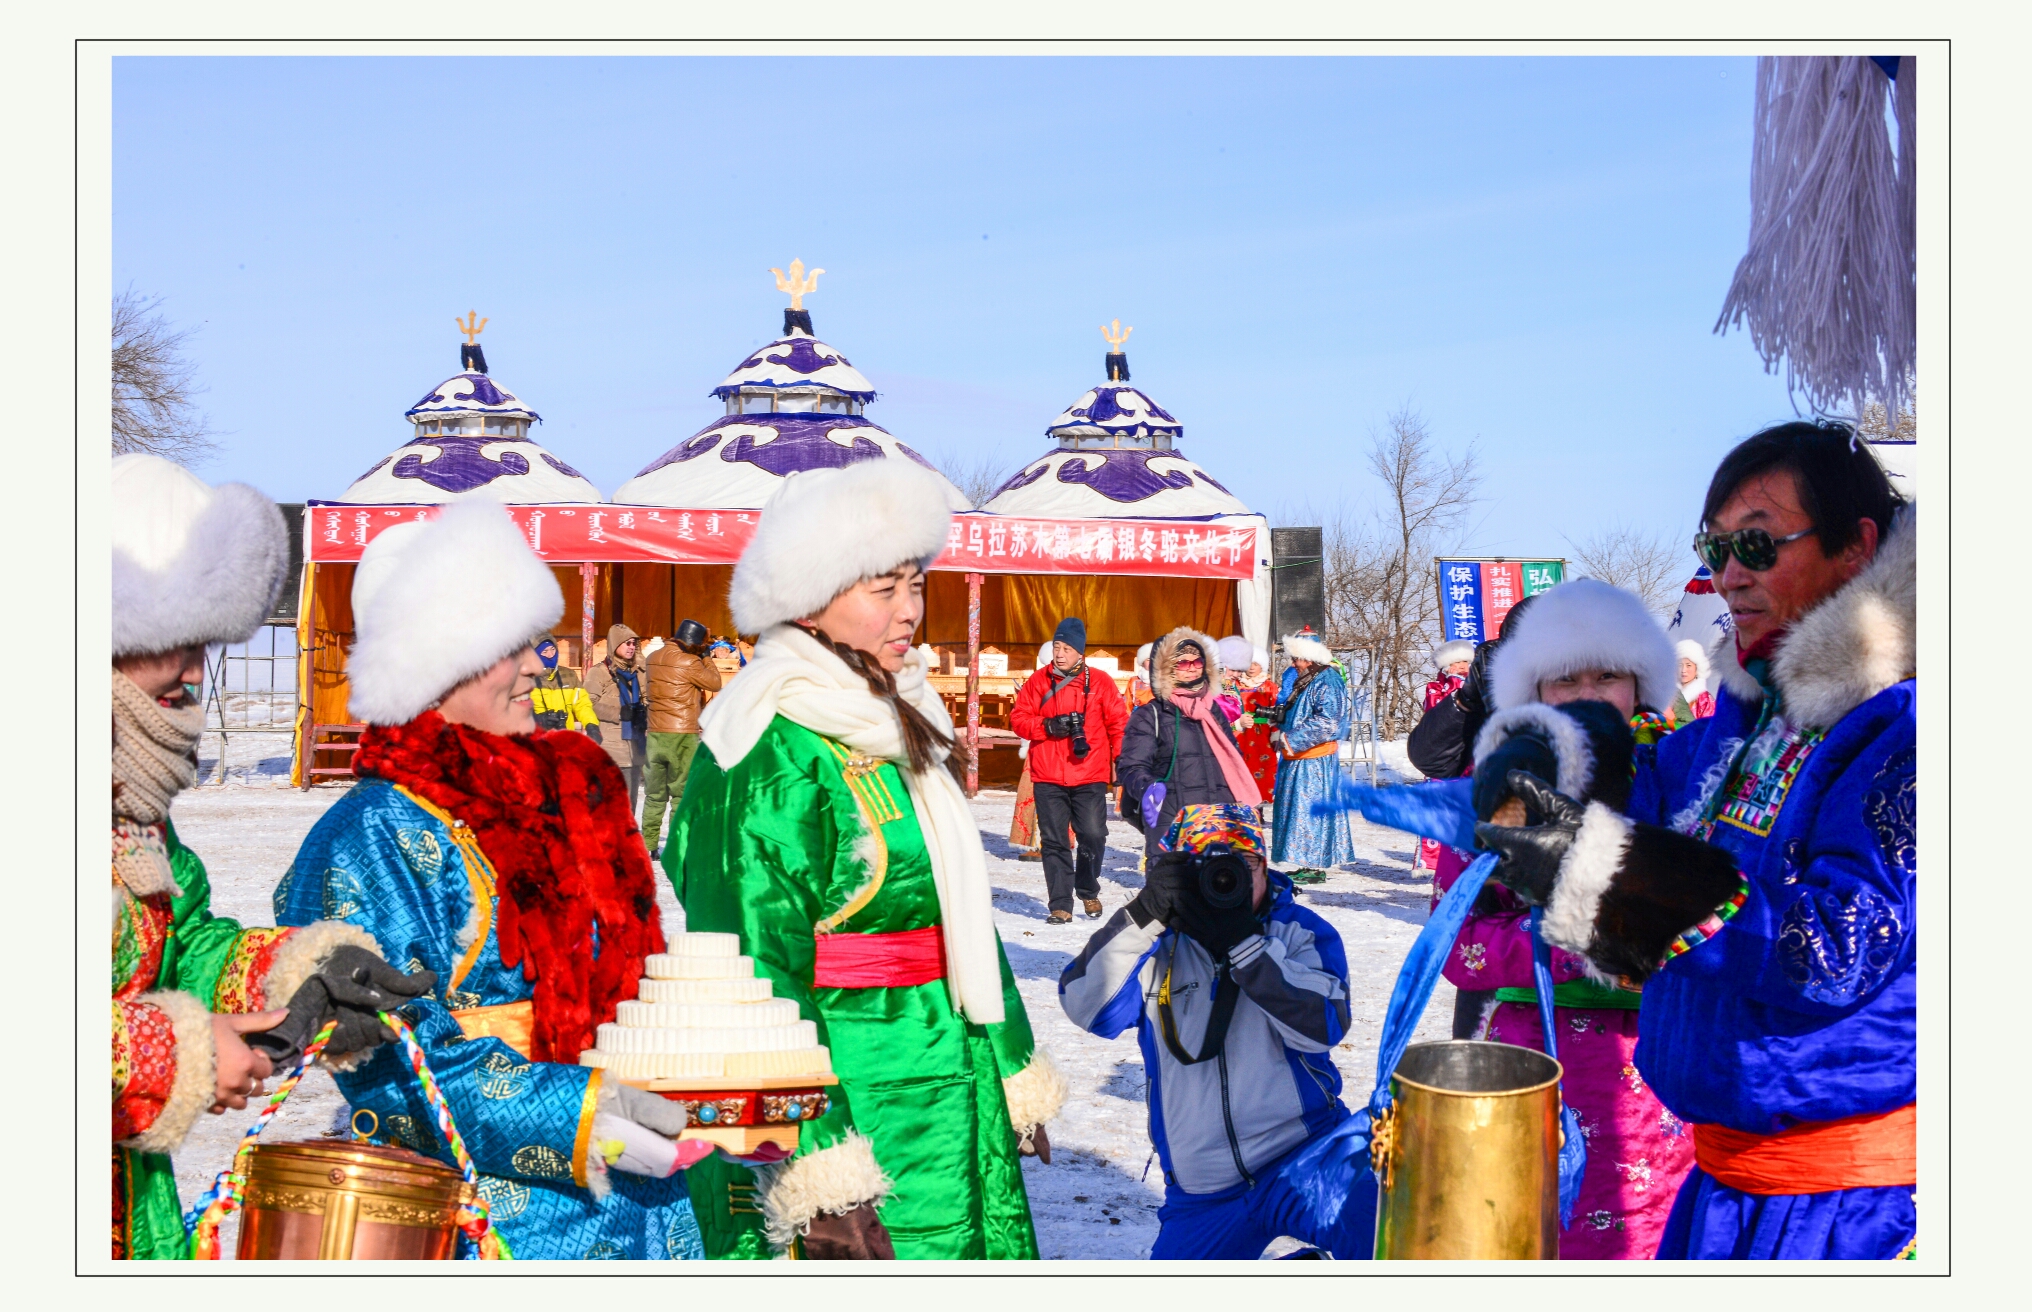 那达慕是蒙古族的一个传统节日盛会,是文化,娱乐的意思